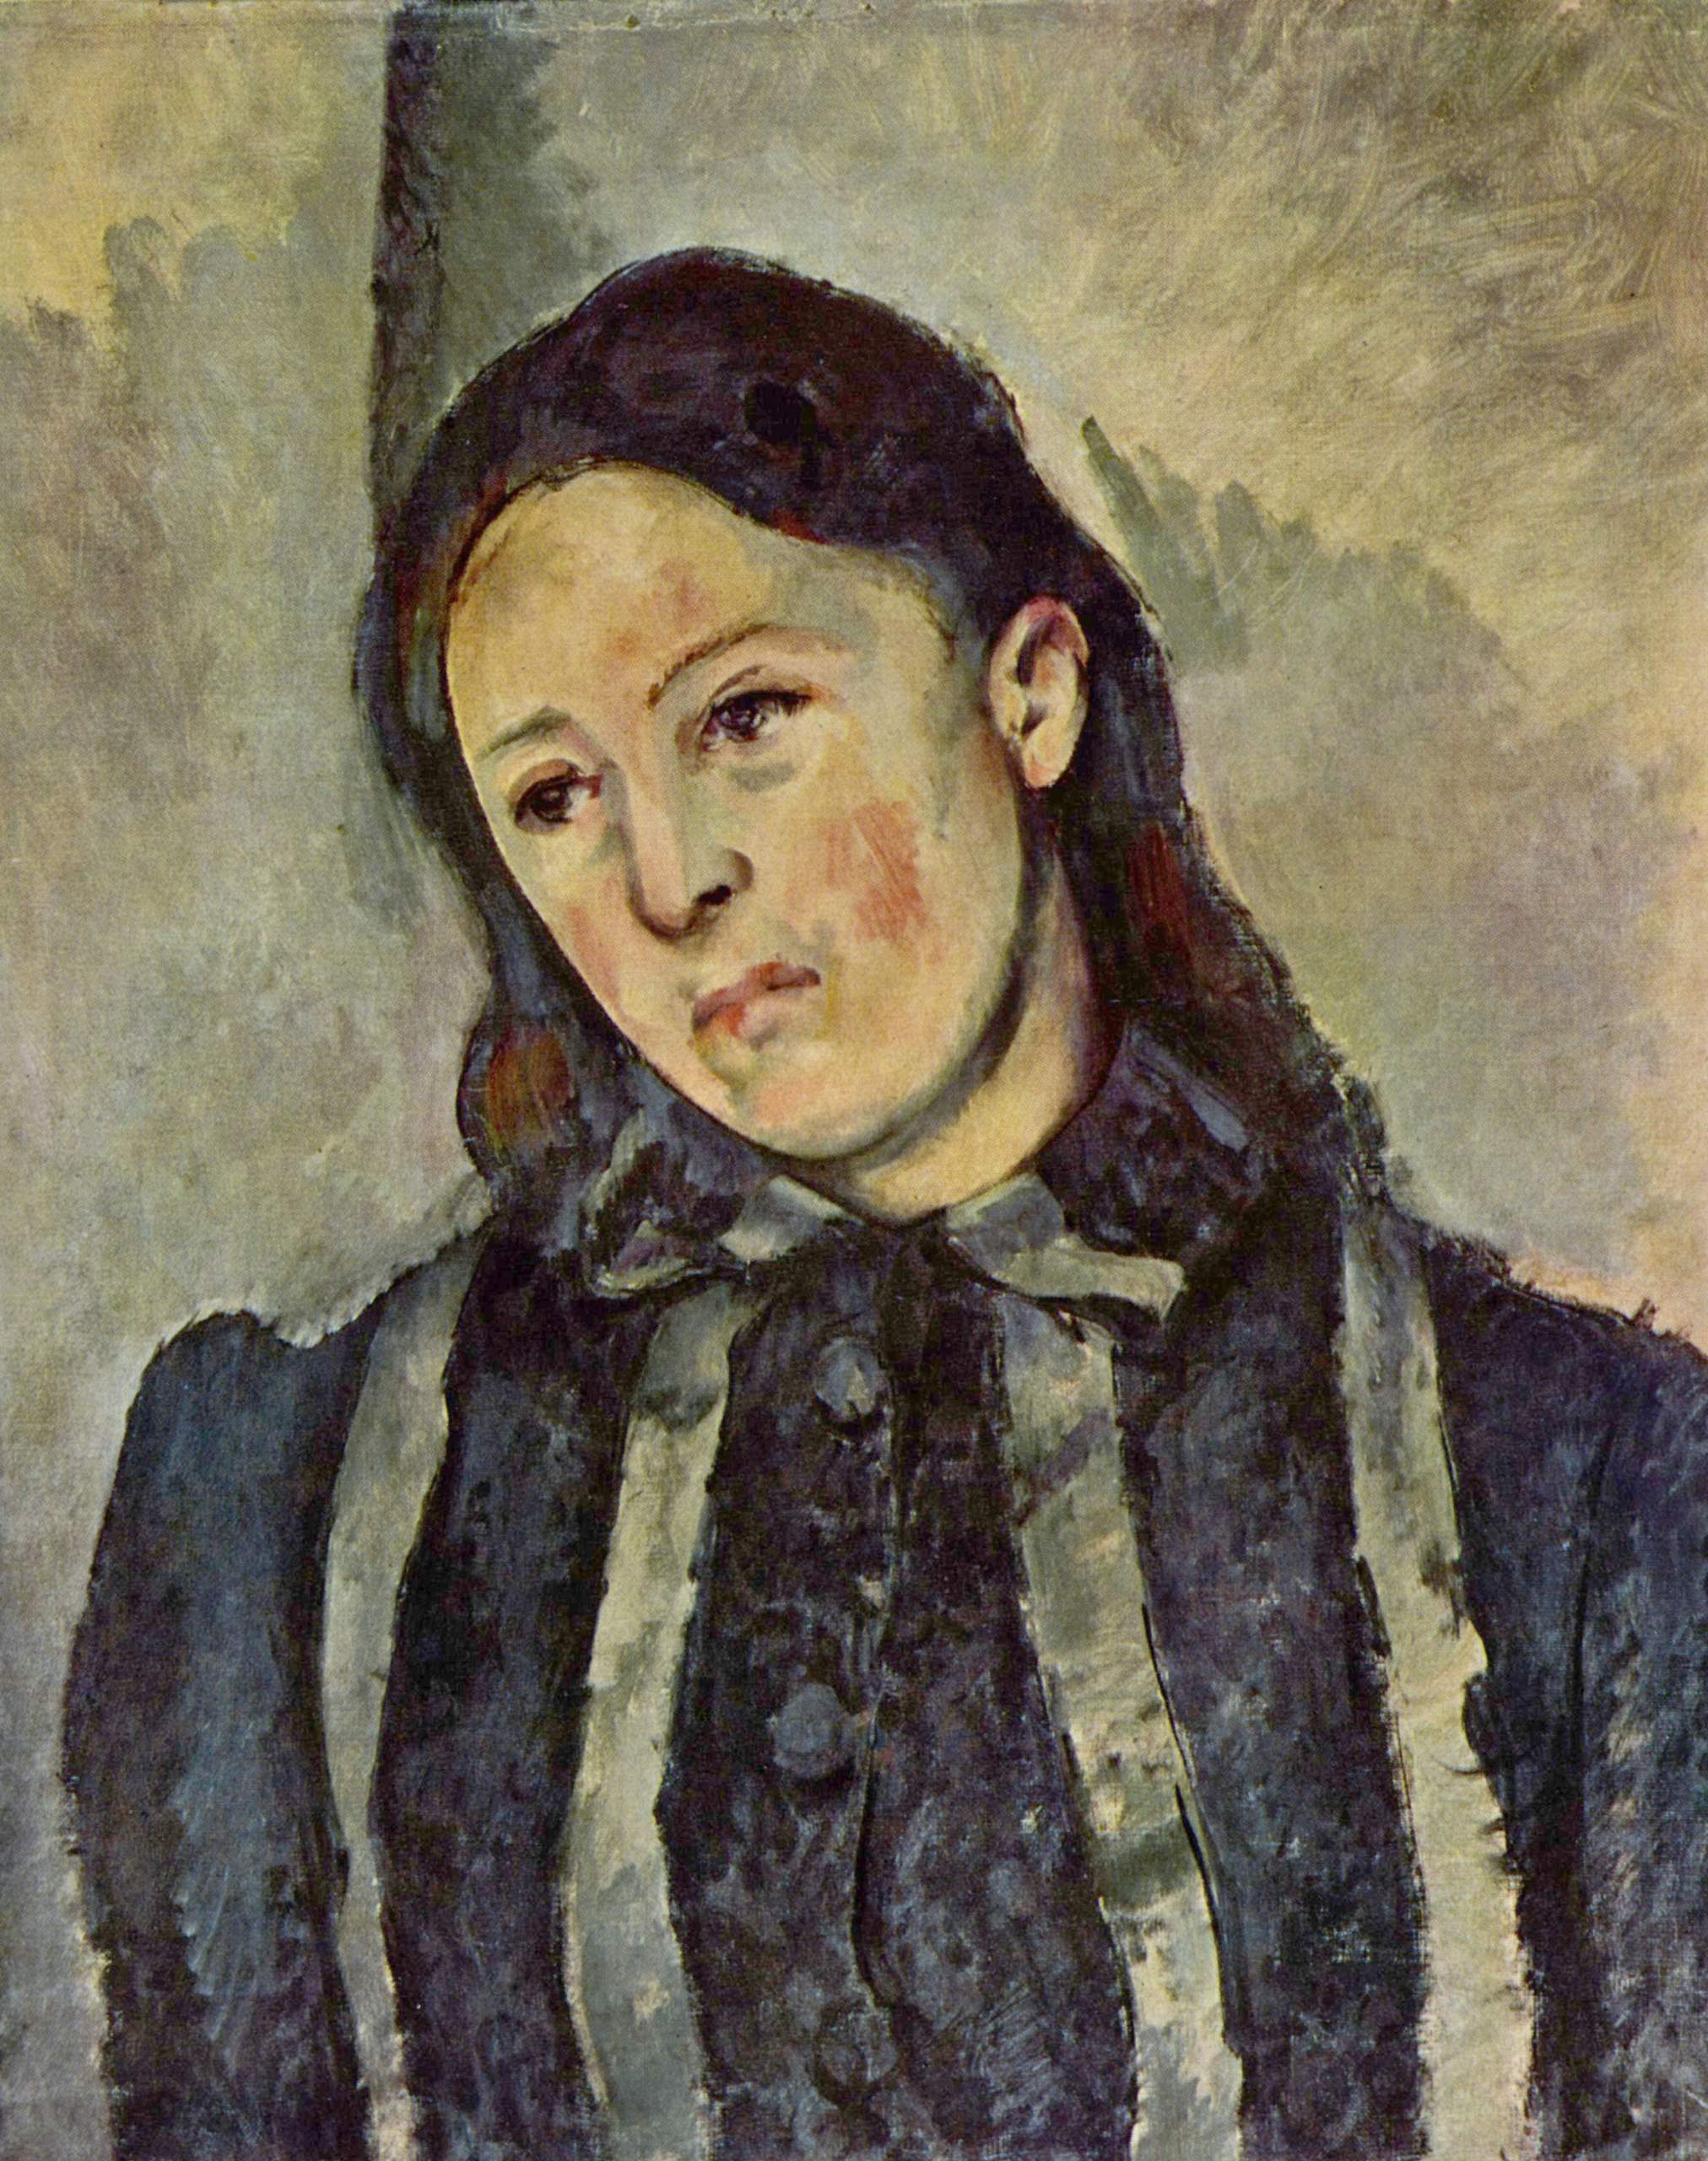 Portrait de Madame Cézanne aux cheveux dénoués by Paul Cézanne - 1882-1887 - 62 × 51 cm collection privée